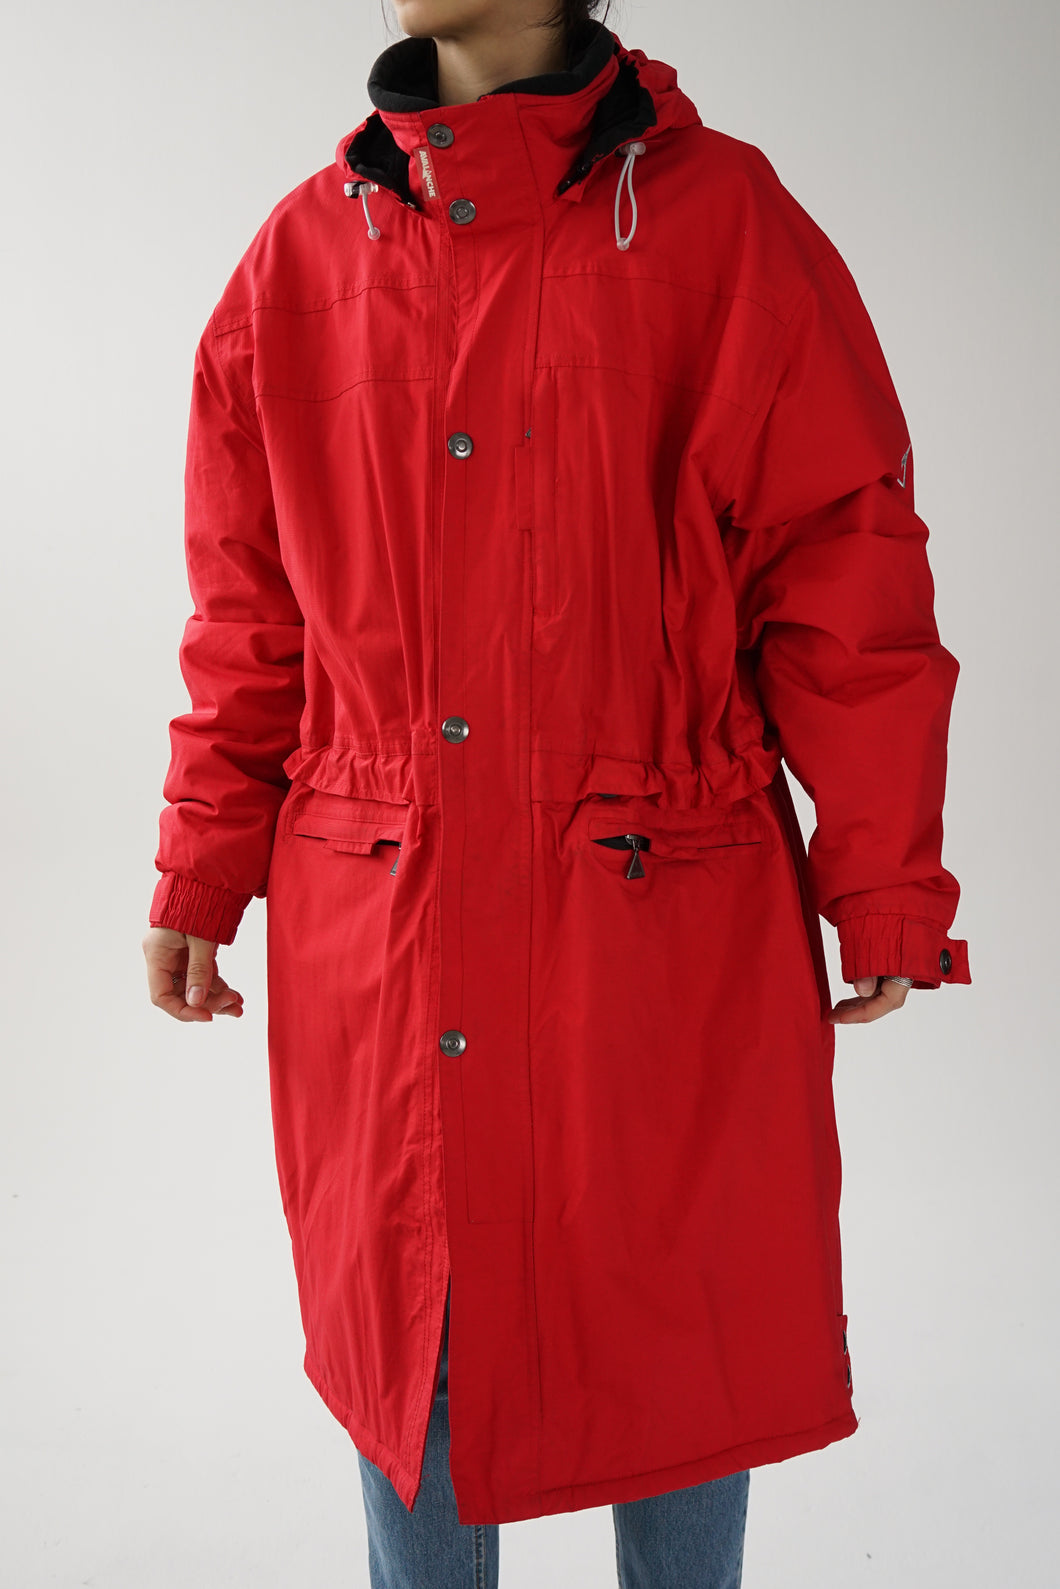 Manteau long de ski Avalanche rouge pour femme taille XL